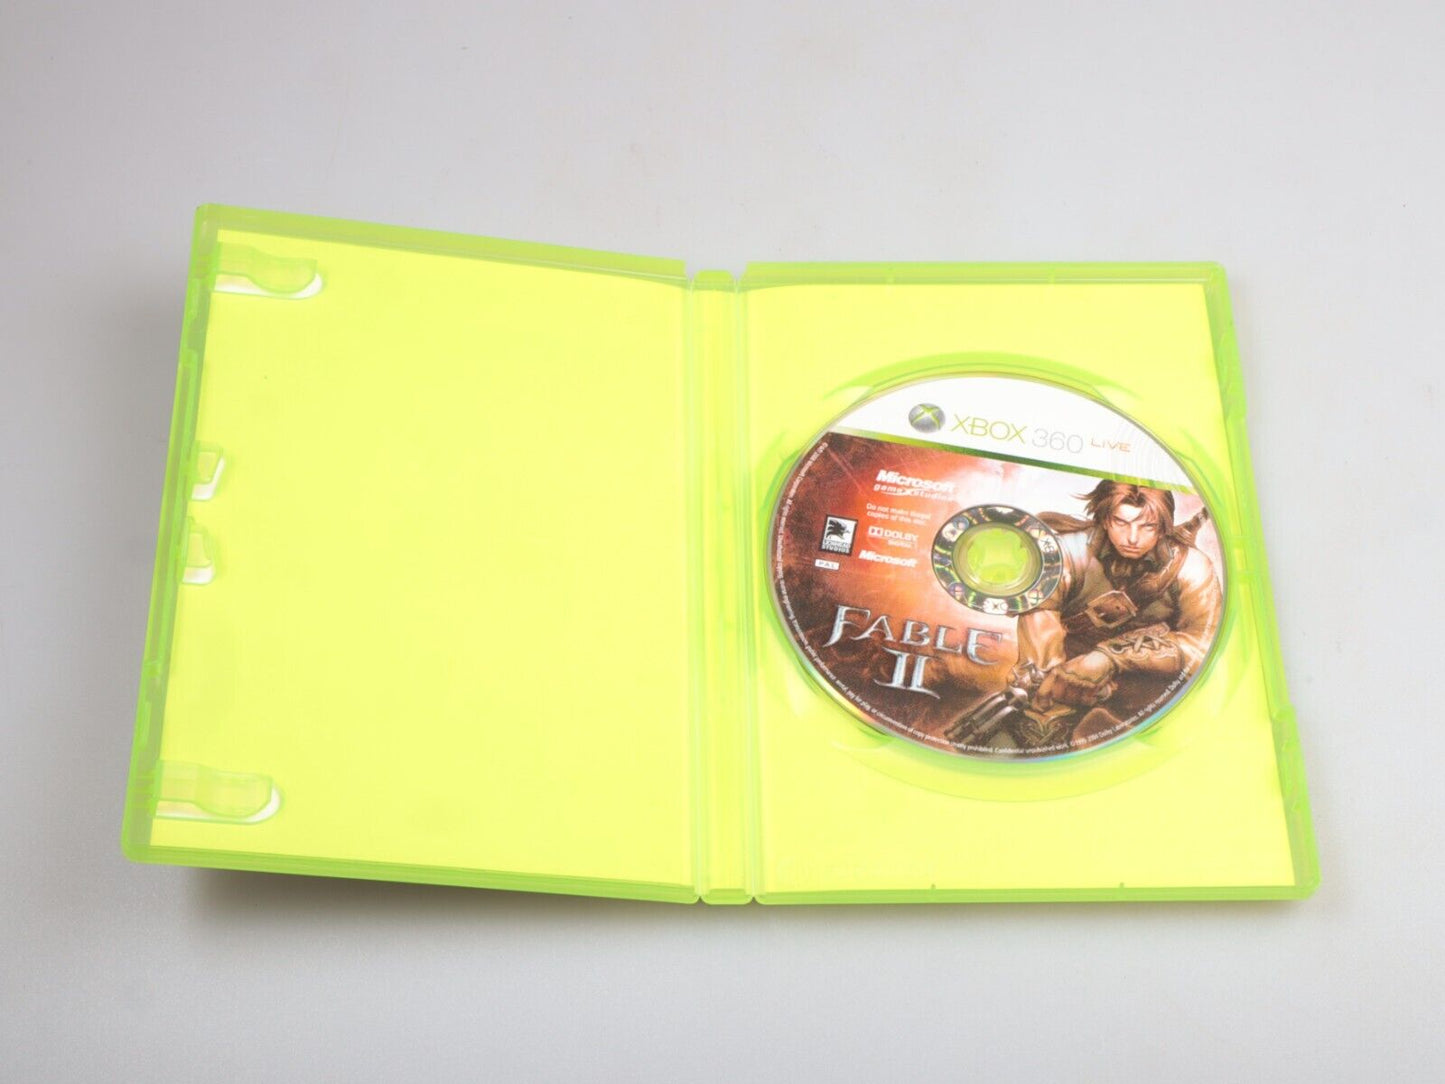 Xbox360 | Fabel II (doos Fabel III) 